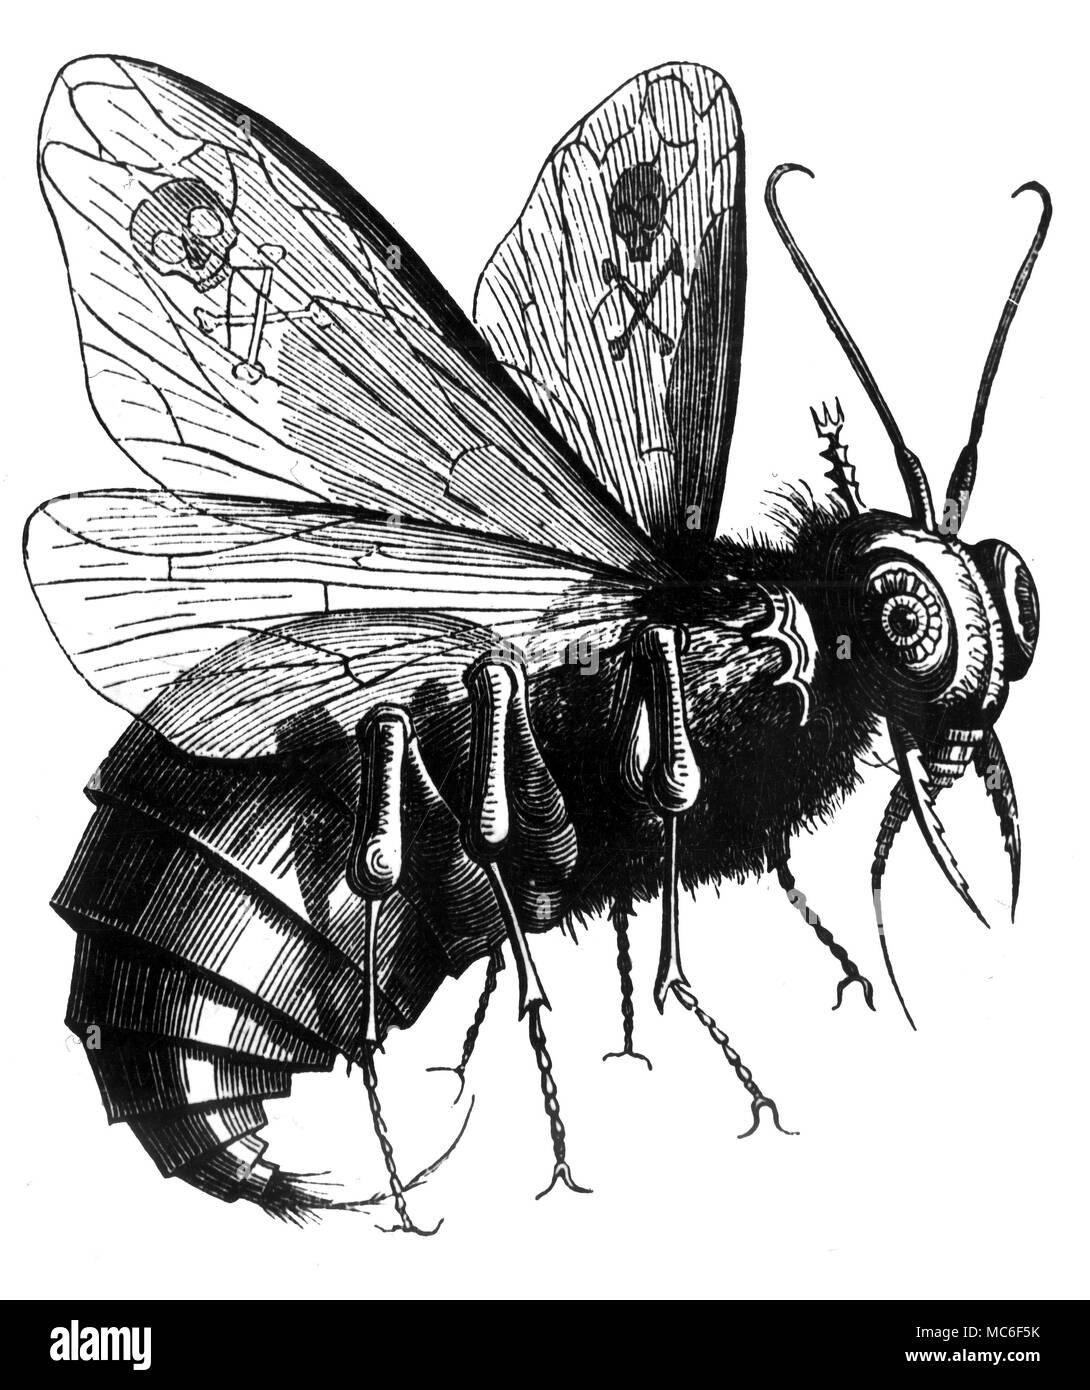 Der Dämon Beelzebub, dessen Name bedeutet (nach einigen) "Herr der Fliegen", wie sie von der journalistischen occulist dargestellt, Collin de Plancy, in seinem Wörterbuch Infernal, 1863. Stockfoto